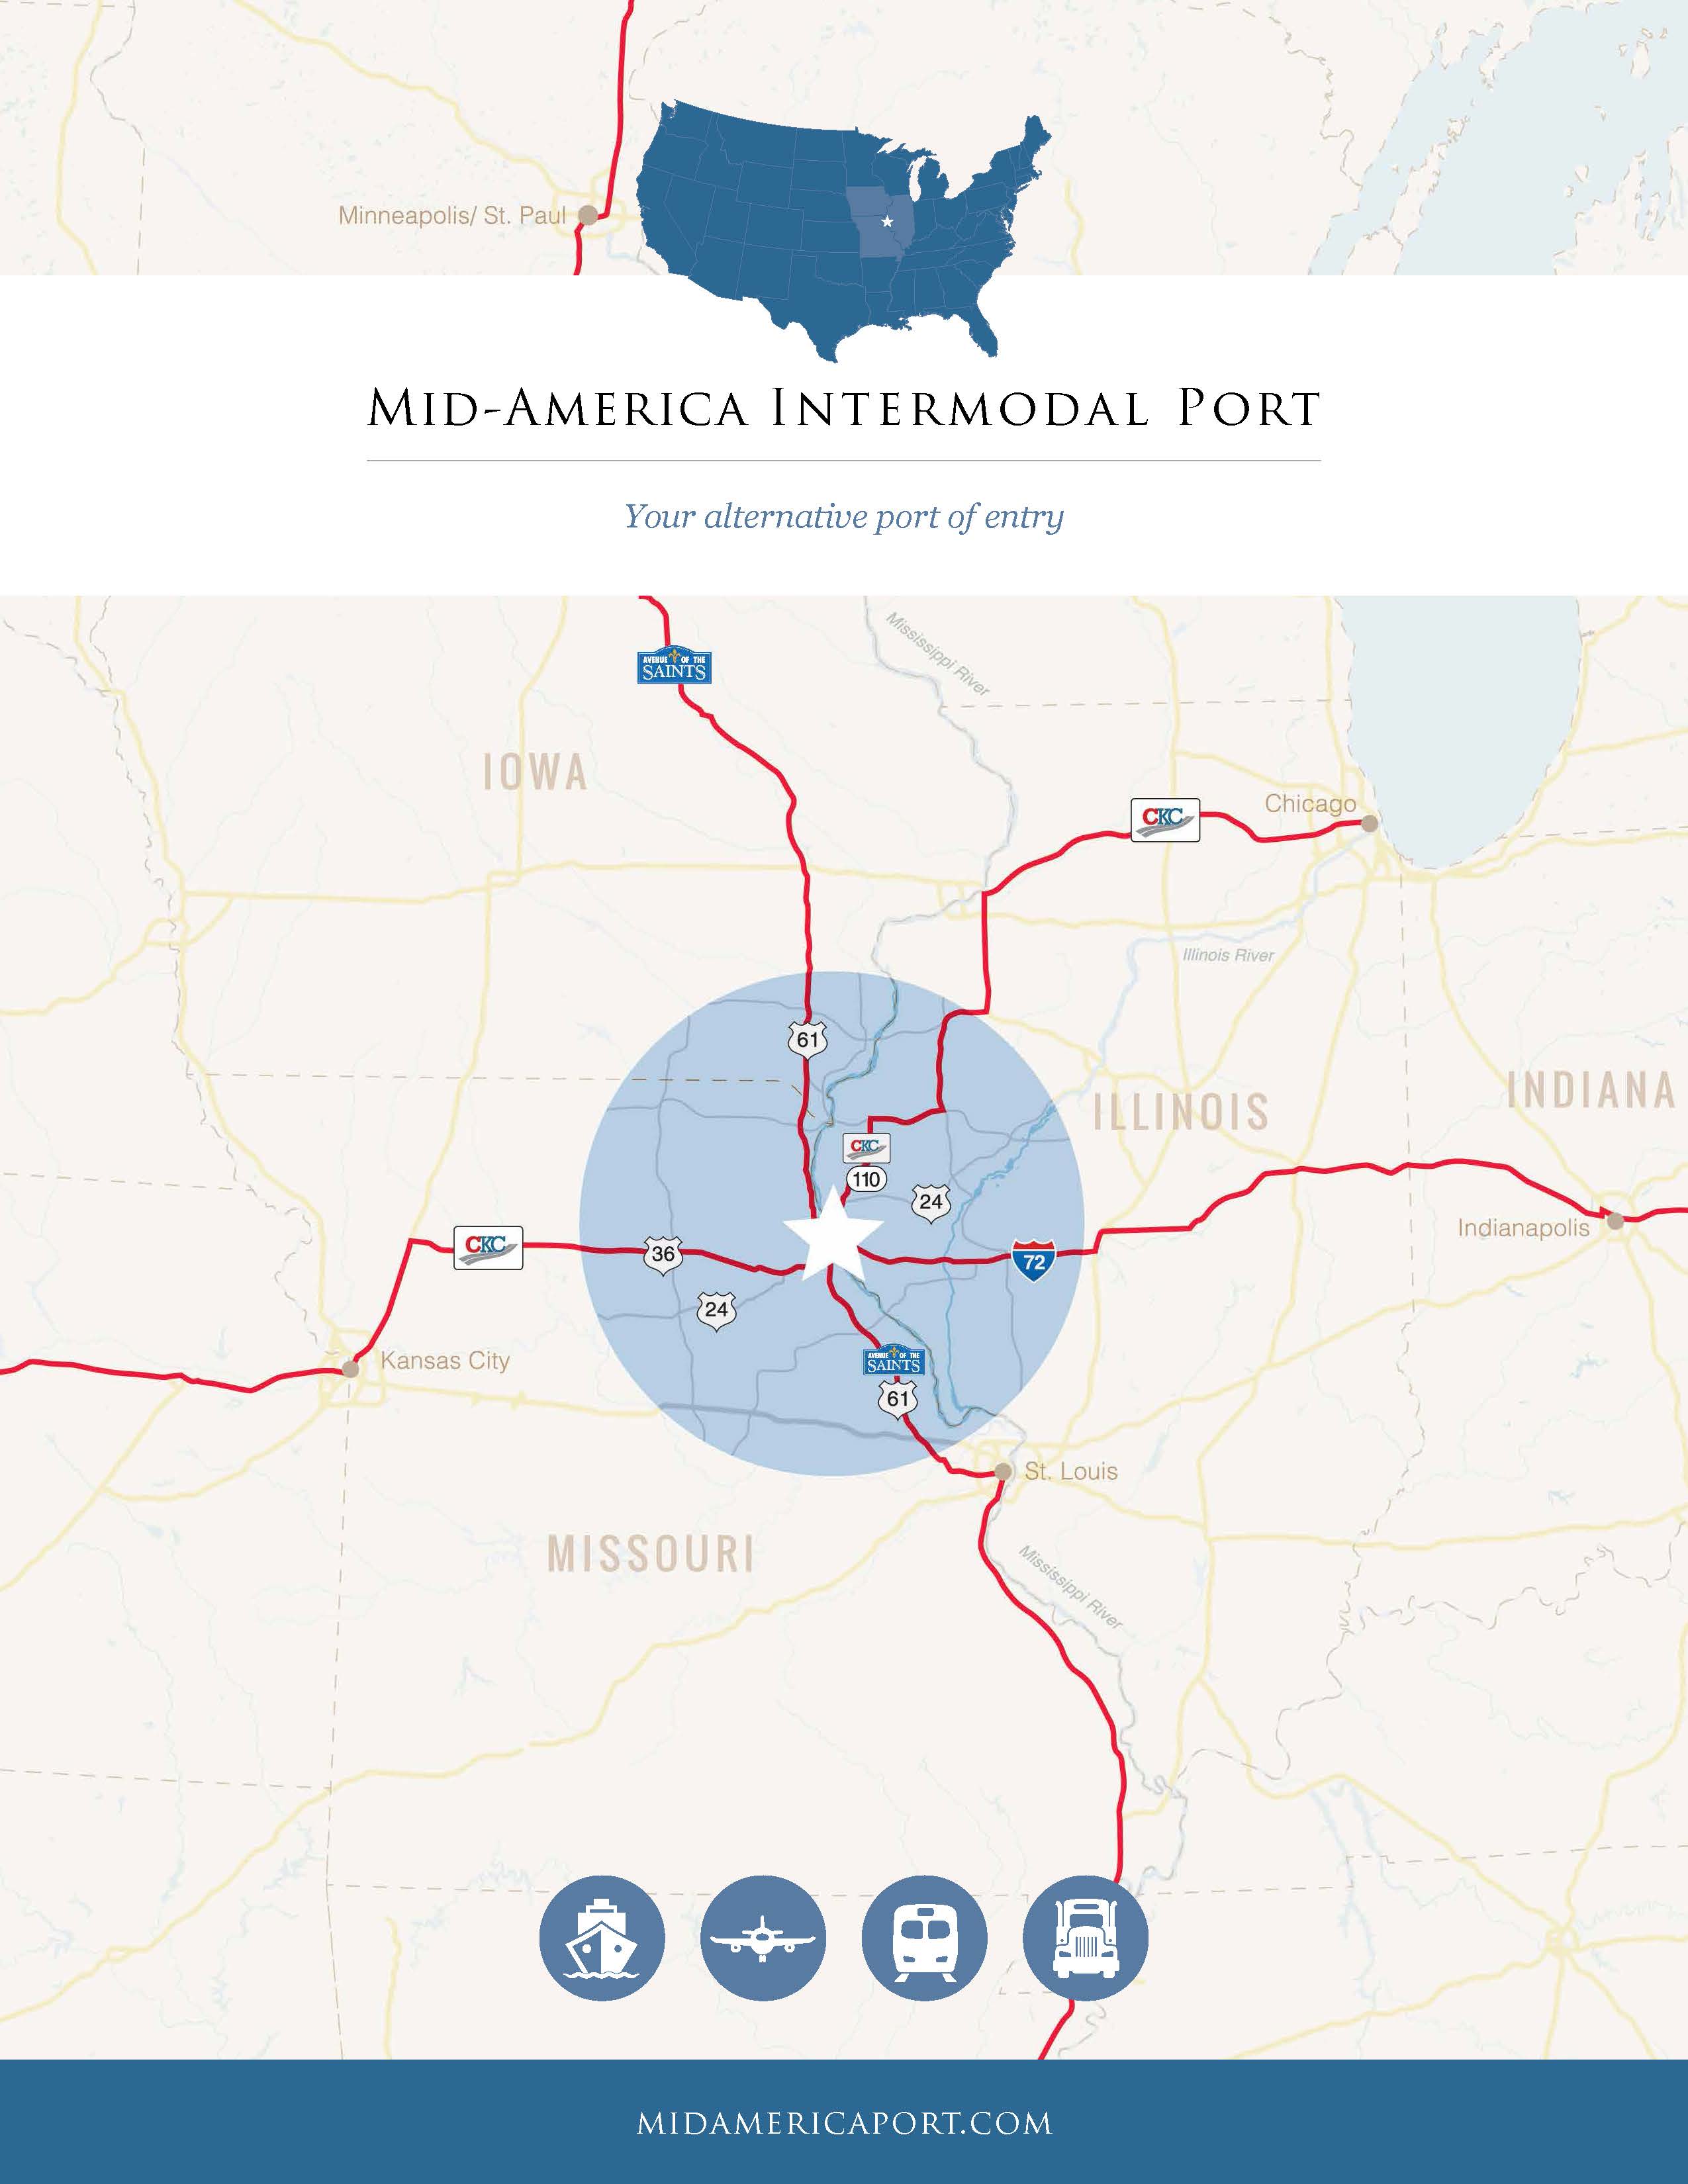 Mid-America Intermodal Port